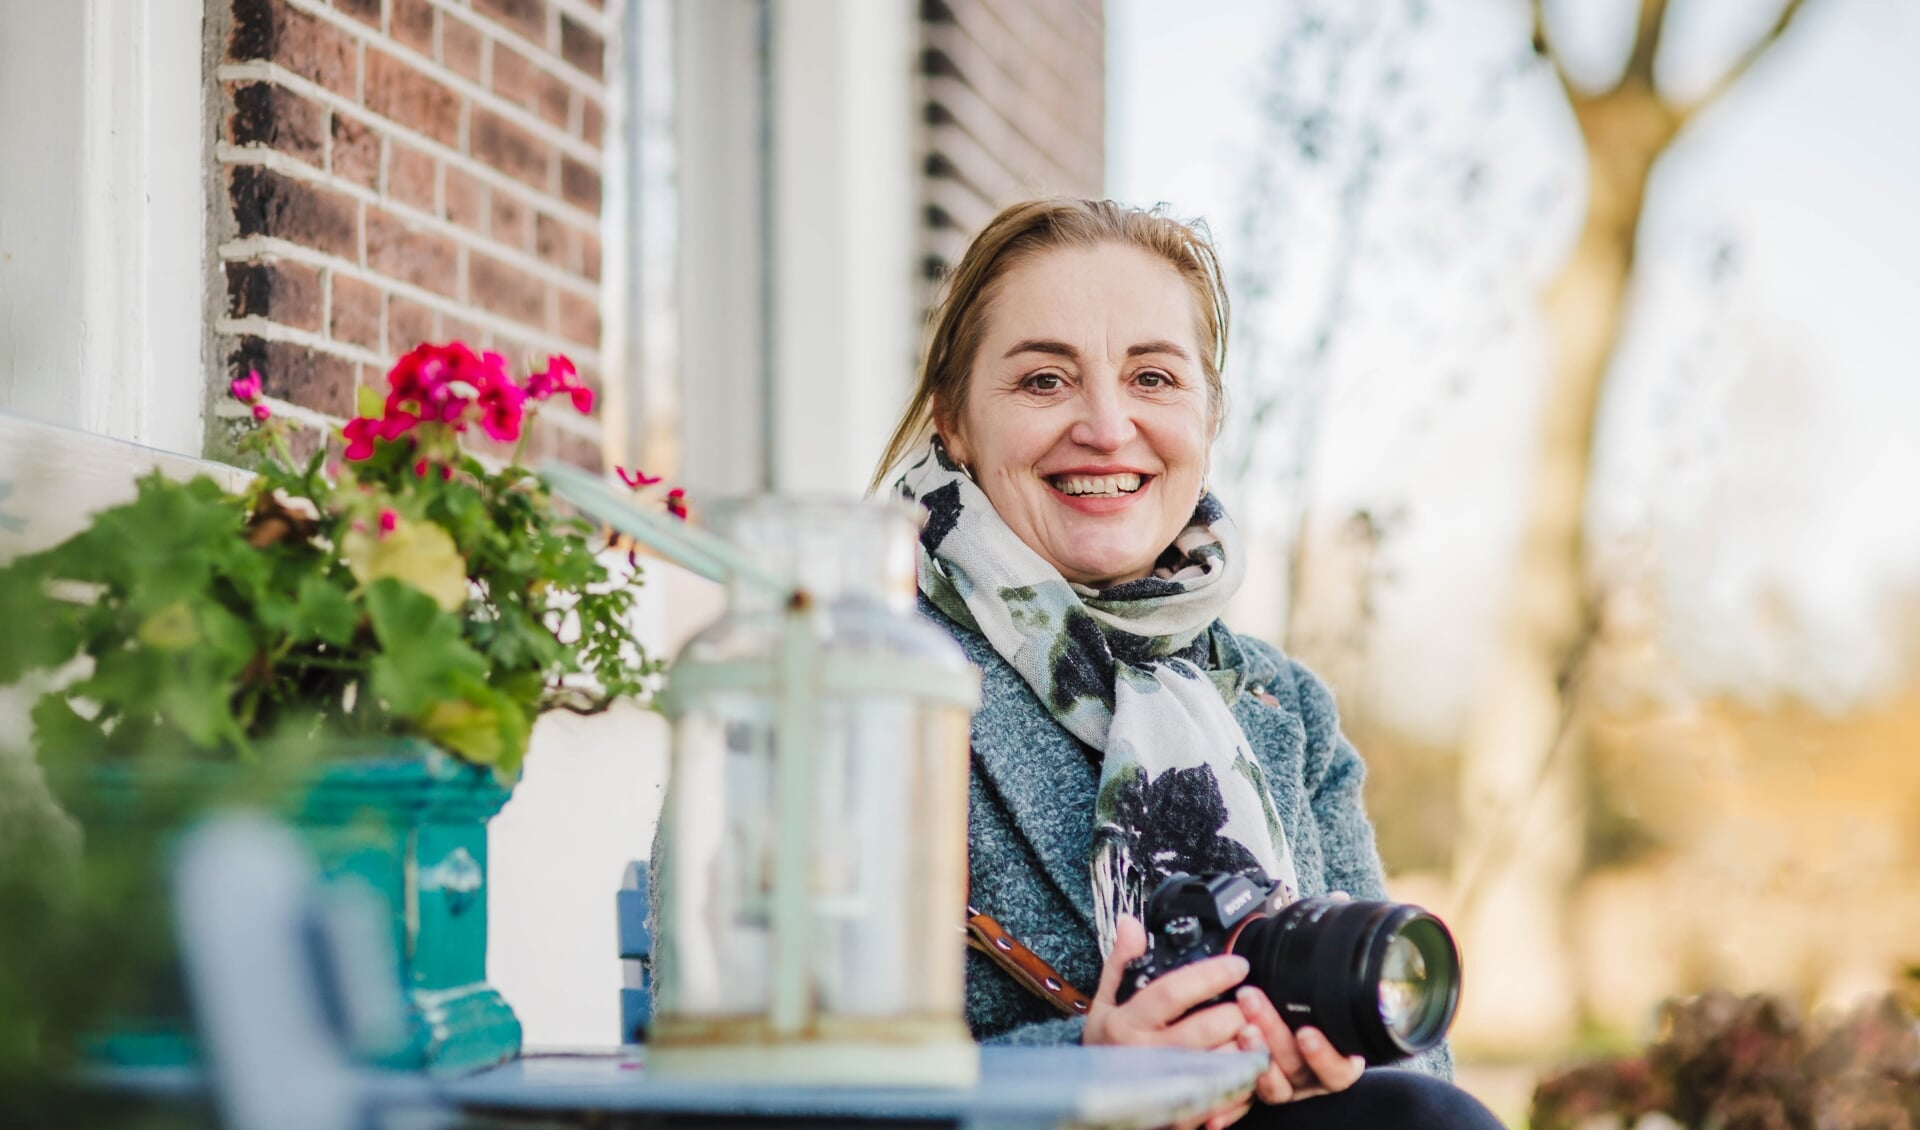 Yvonne ten Bruggencate wil met haar talent graag iets doen voor mensen die het niet zo breed hebben.